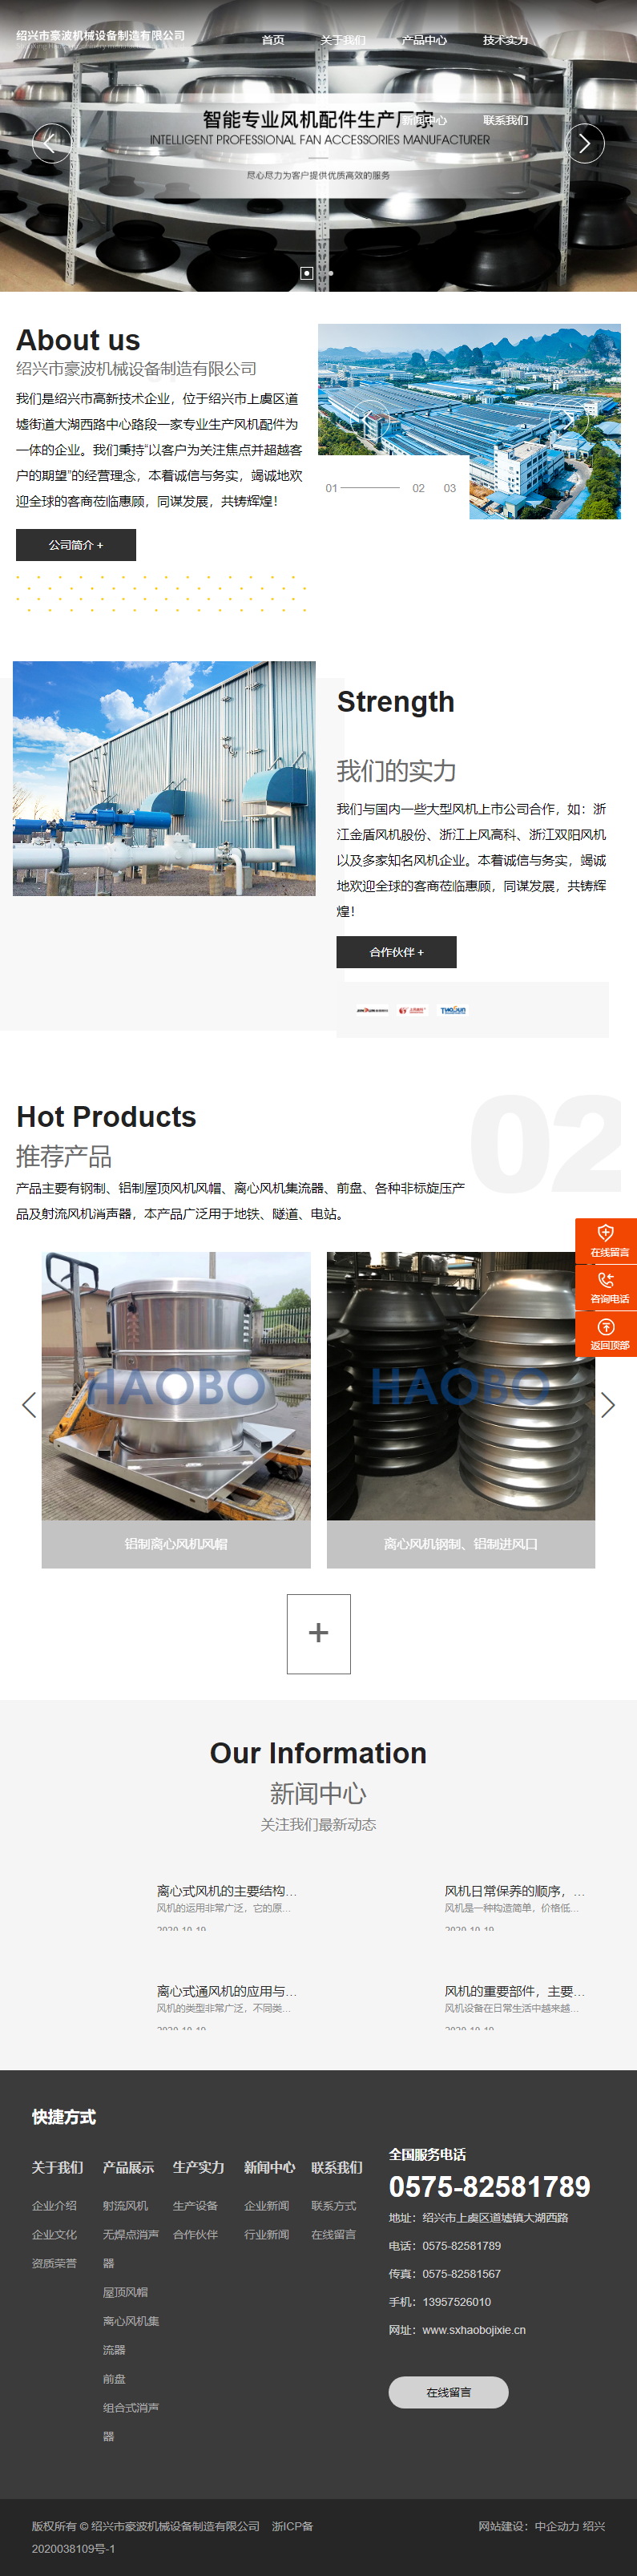 绍兴市豪波机械设备制造有限公司网站案例